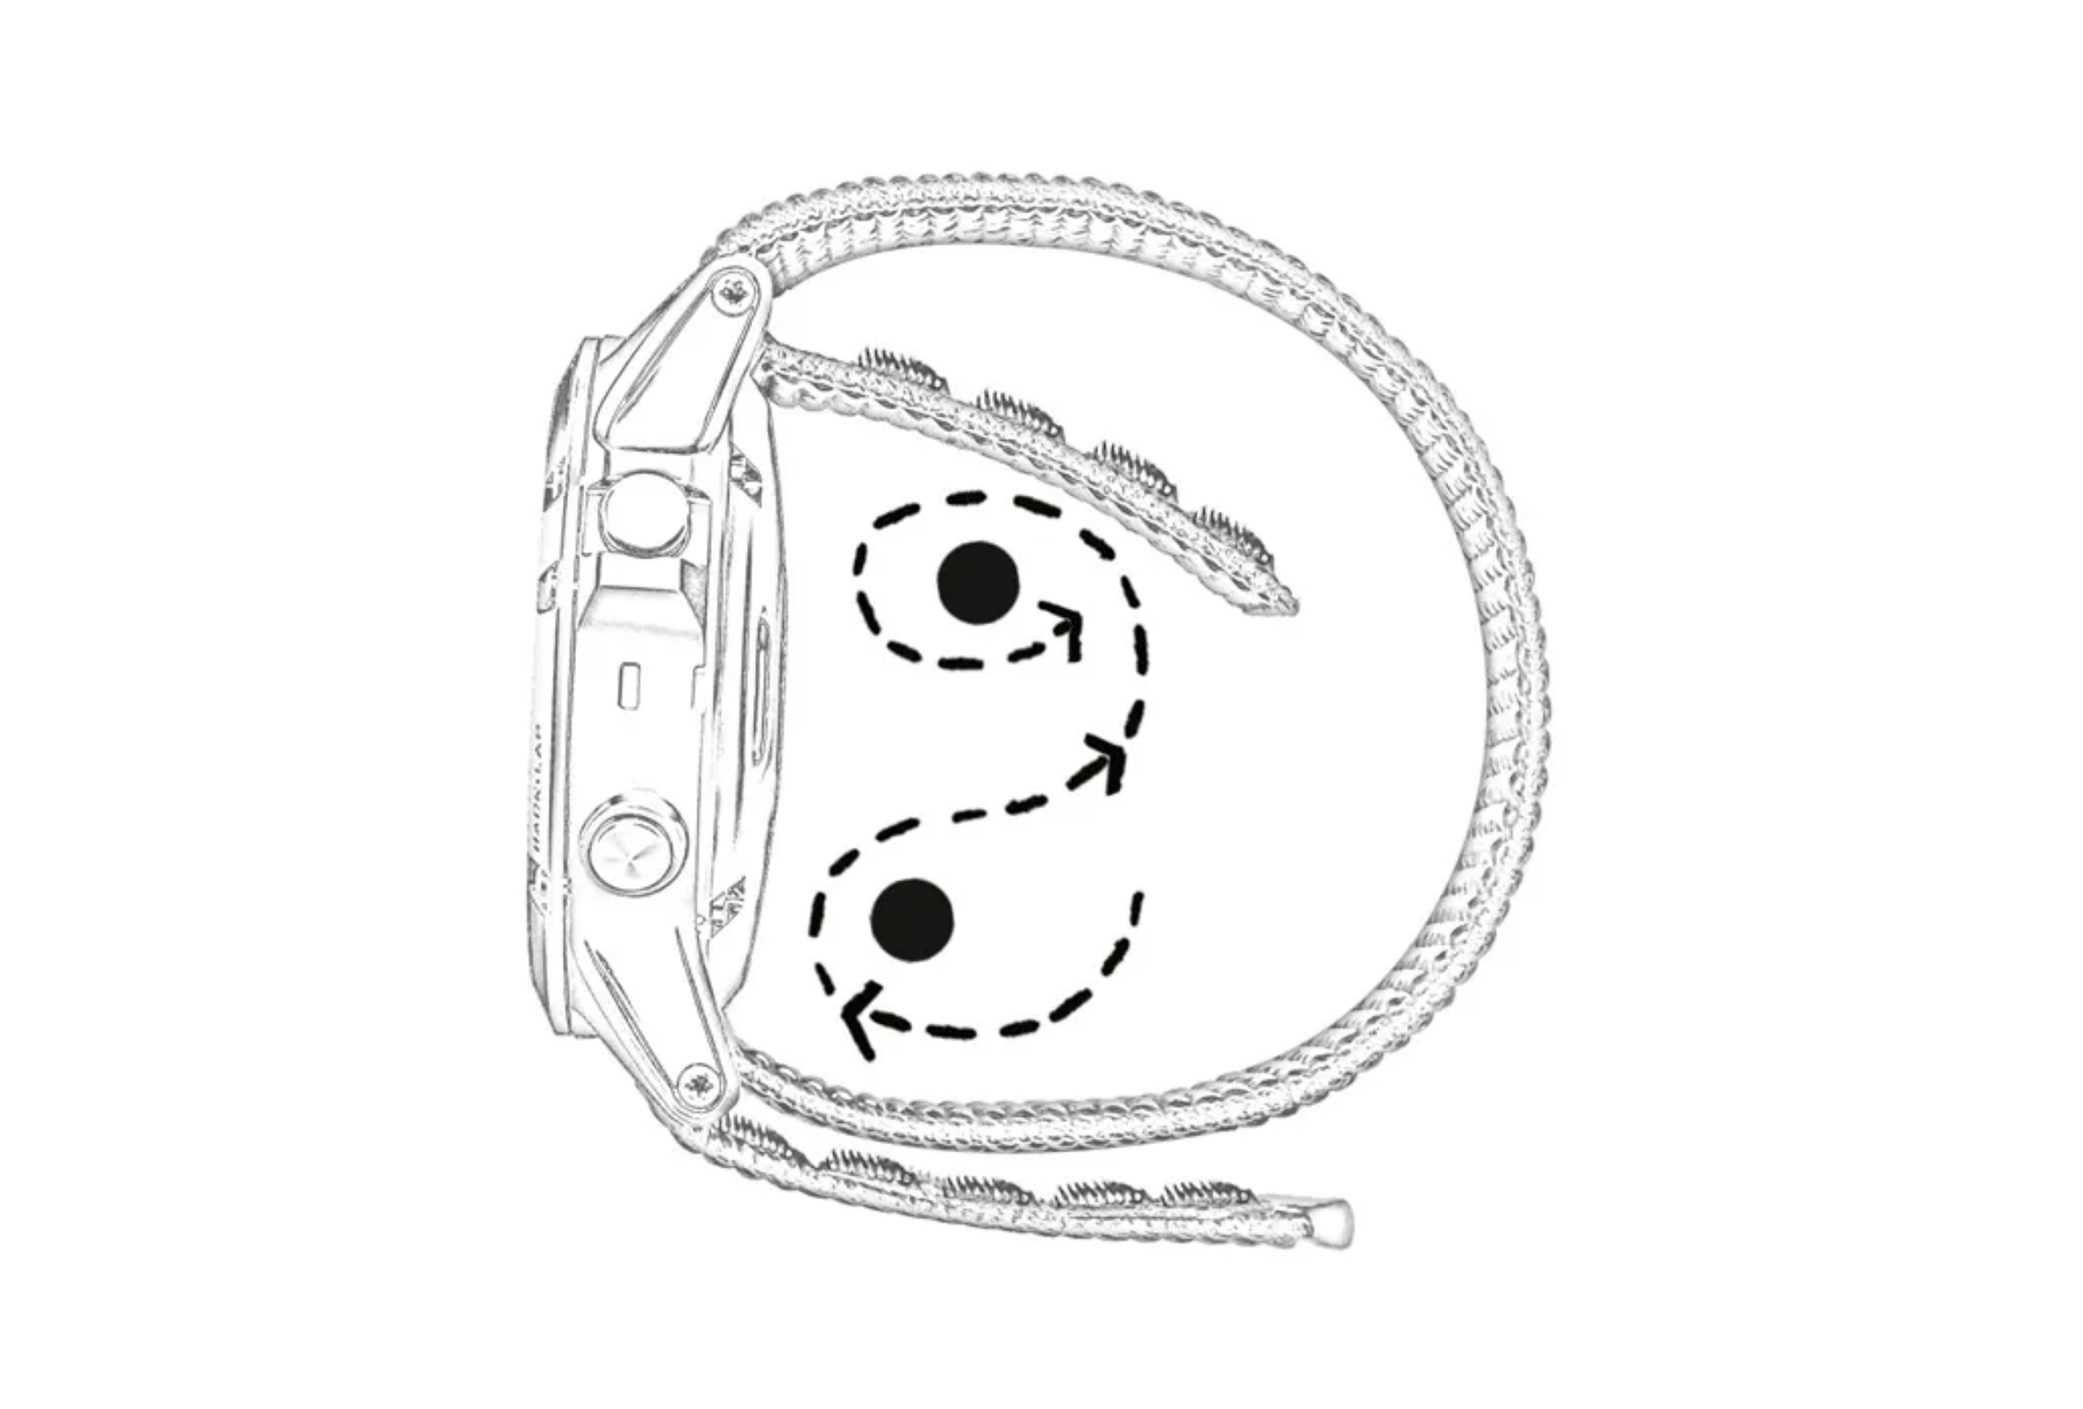 Нейлоновый ремешок для часов Garmin UltraFit 22, 26 мм на липучках